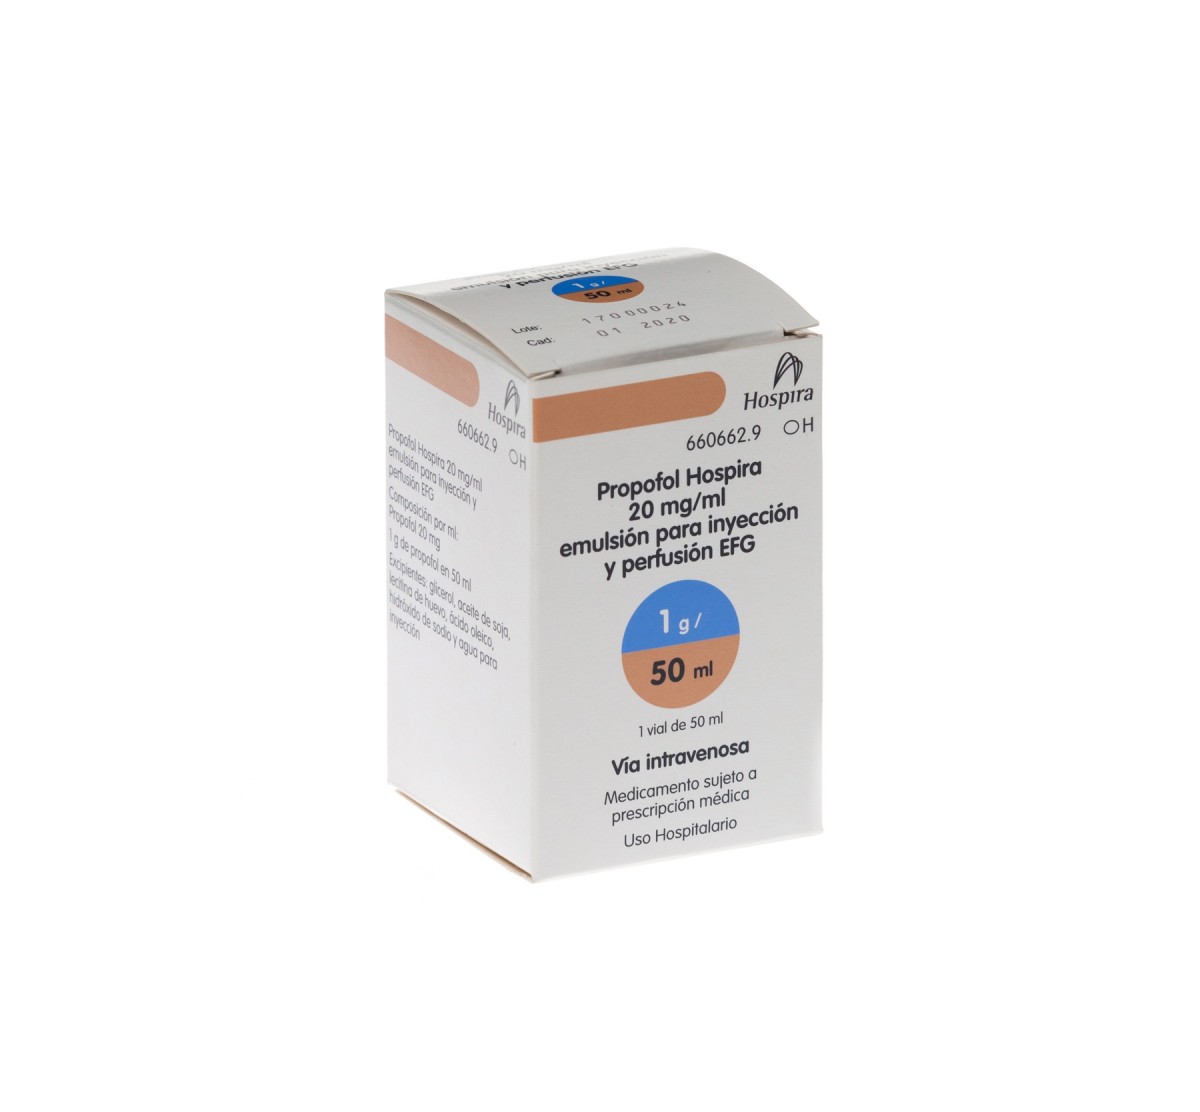 PROPOFOL HOSPIRA 20 mg/ml EMULSION PARA INYECCION Y PERFUSION EFG, 1 vial de 50 ml fotografía del envase.